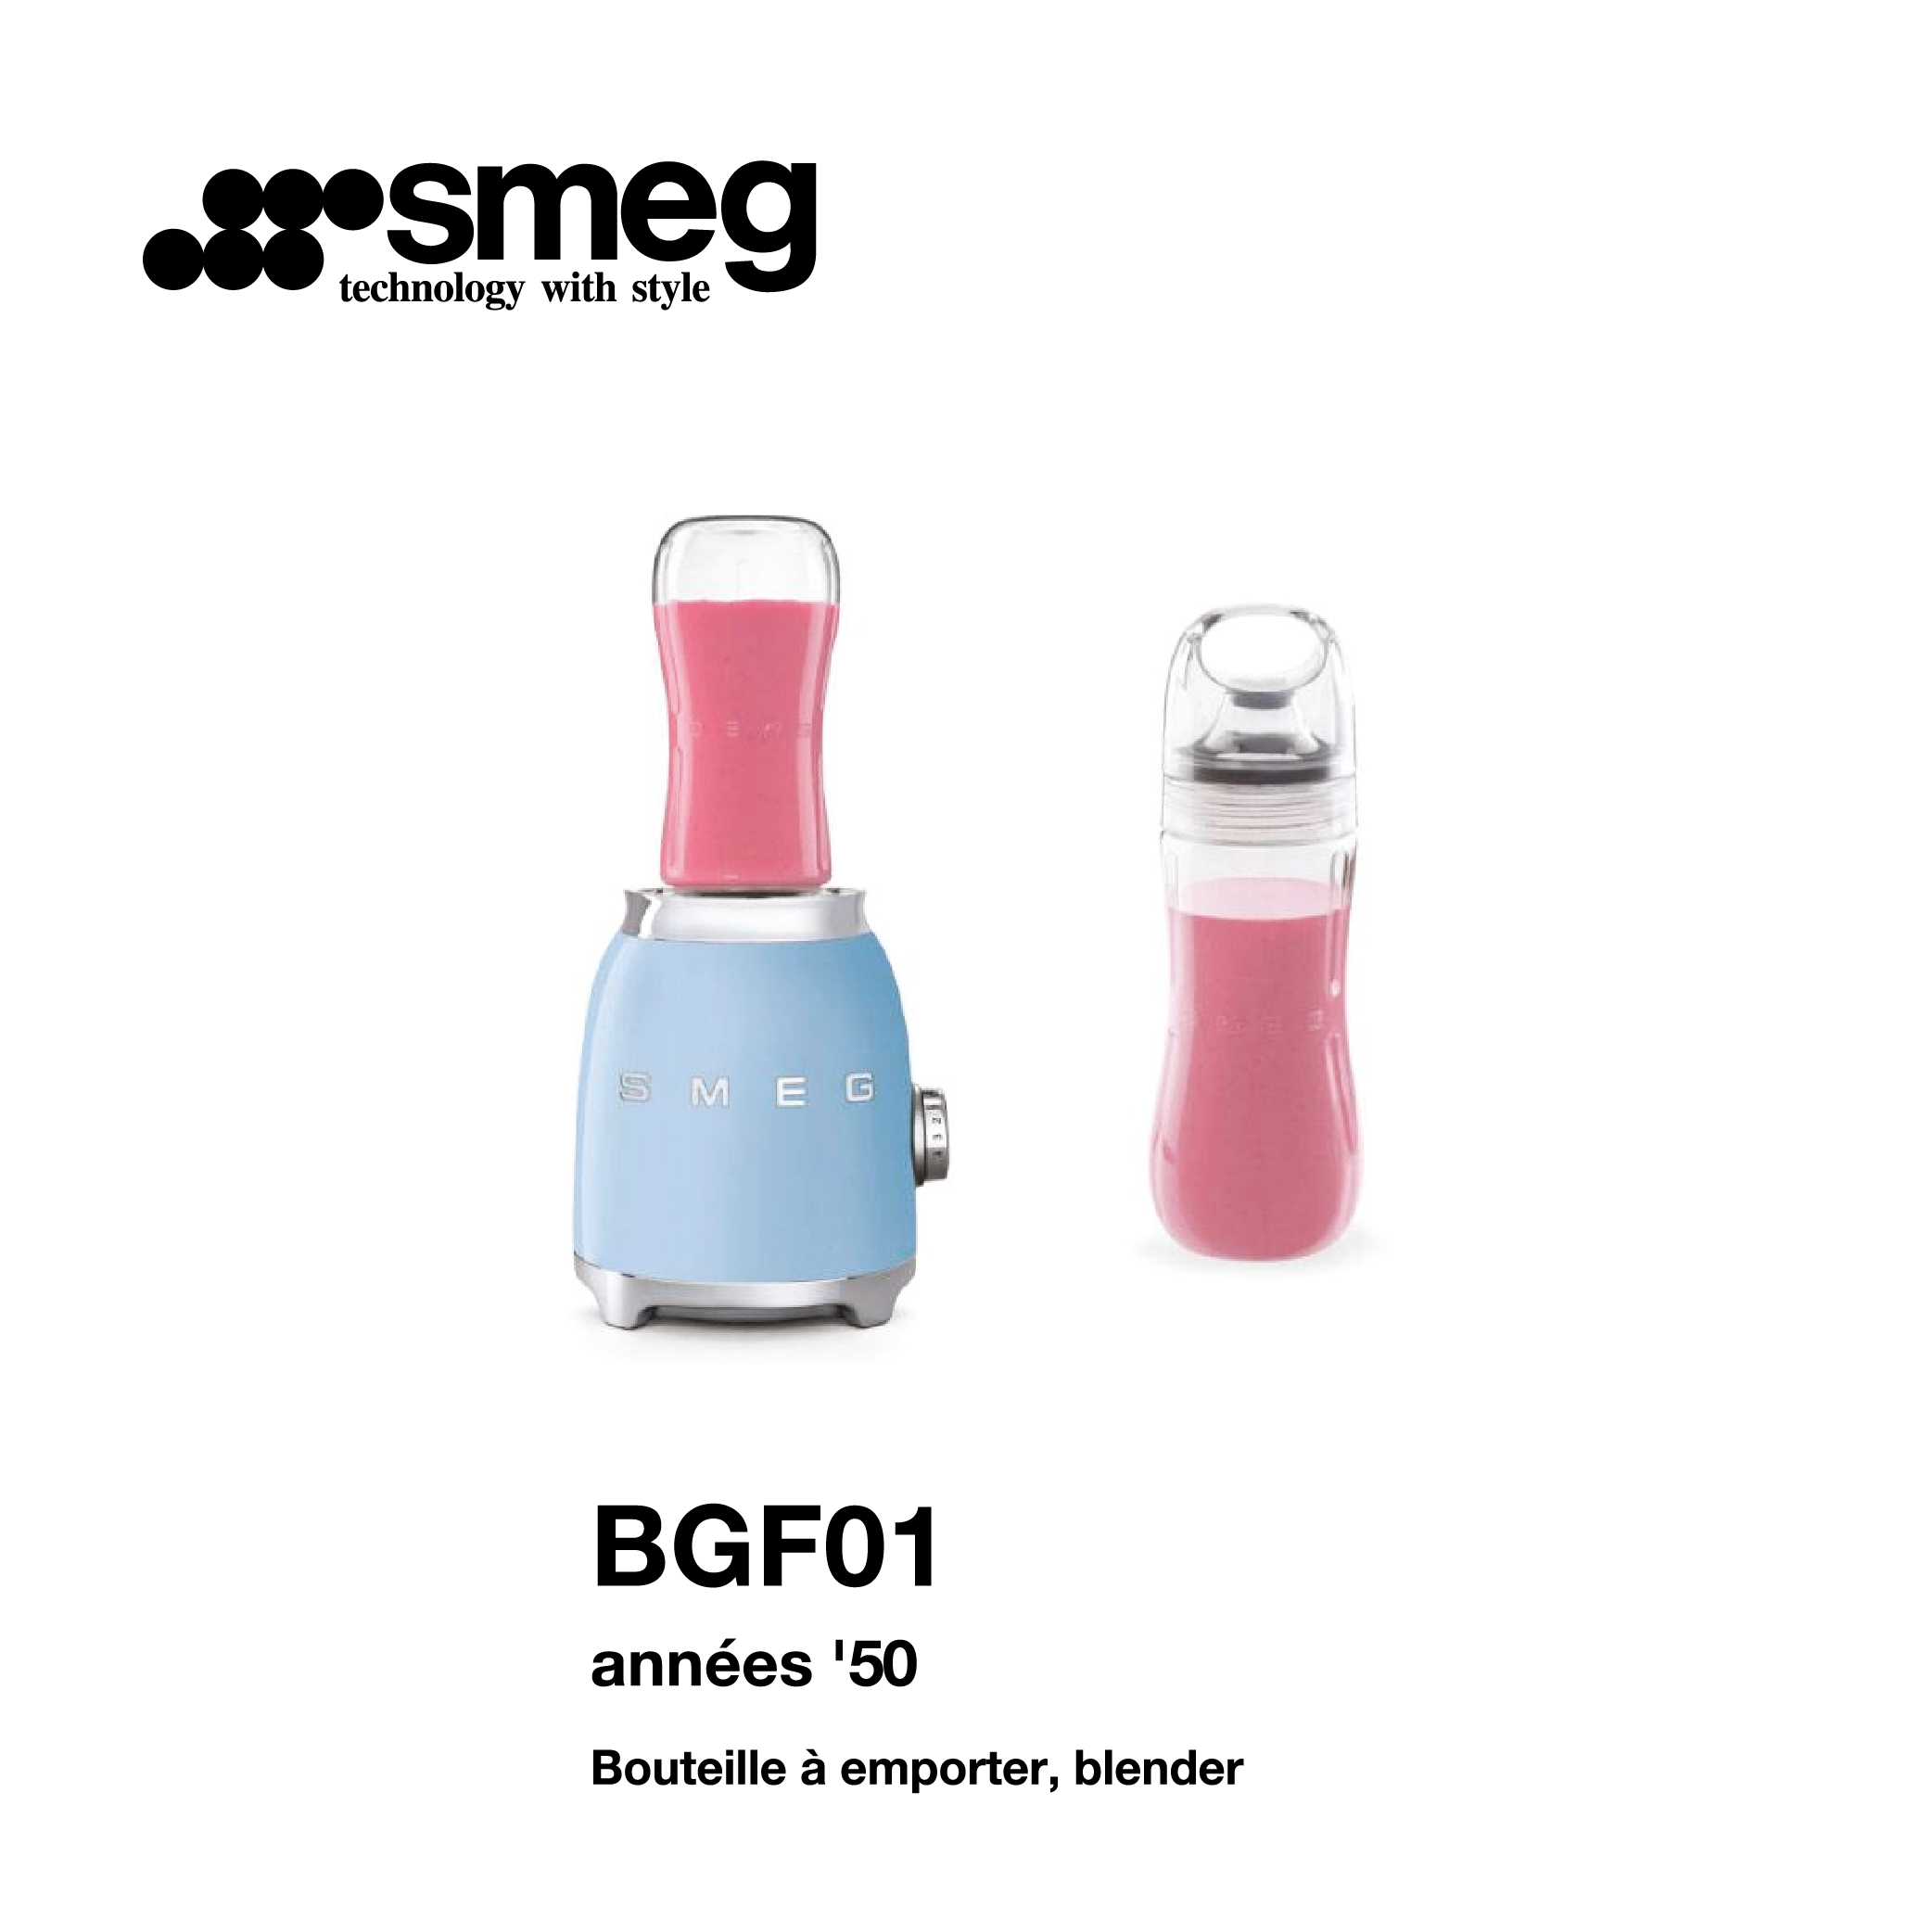 bouteille a emporter blender smeg bleu et rose BGF01